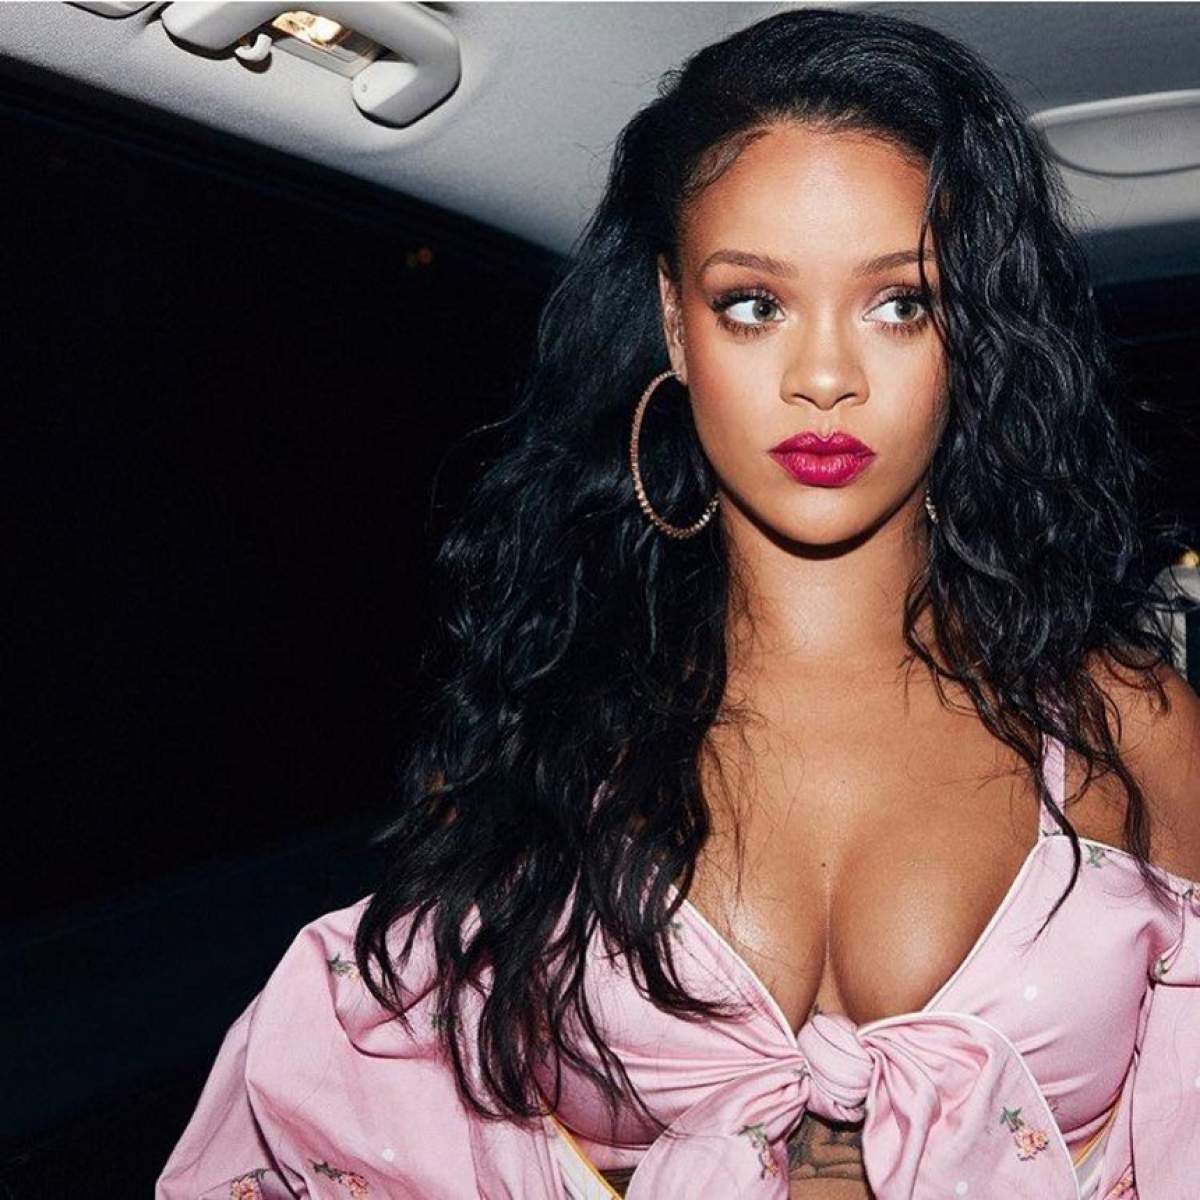 FOTO / Rihanna, ce ai făcut? Salopeta transparentă a lăsat la vedere lenjeria intimă, pe covorul roșu